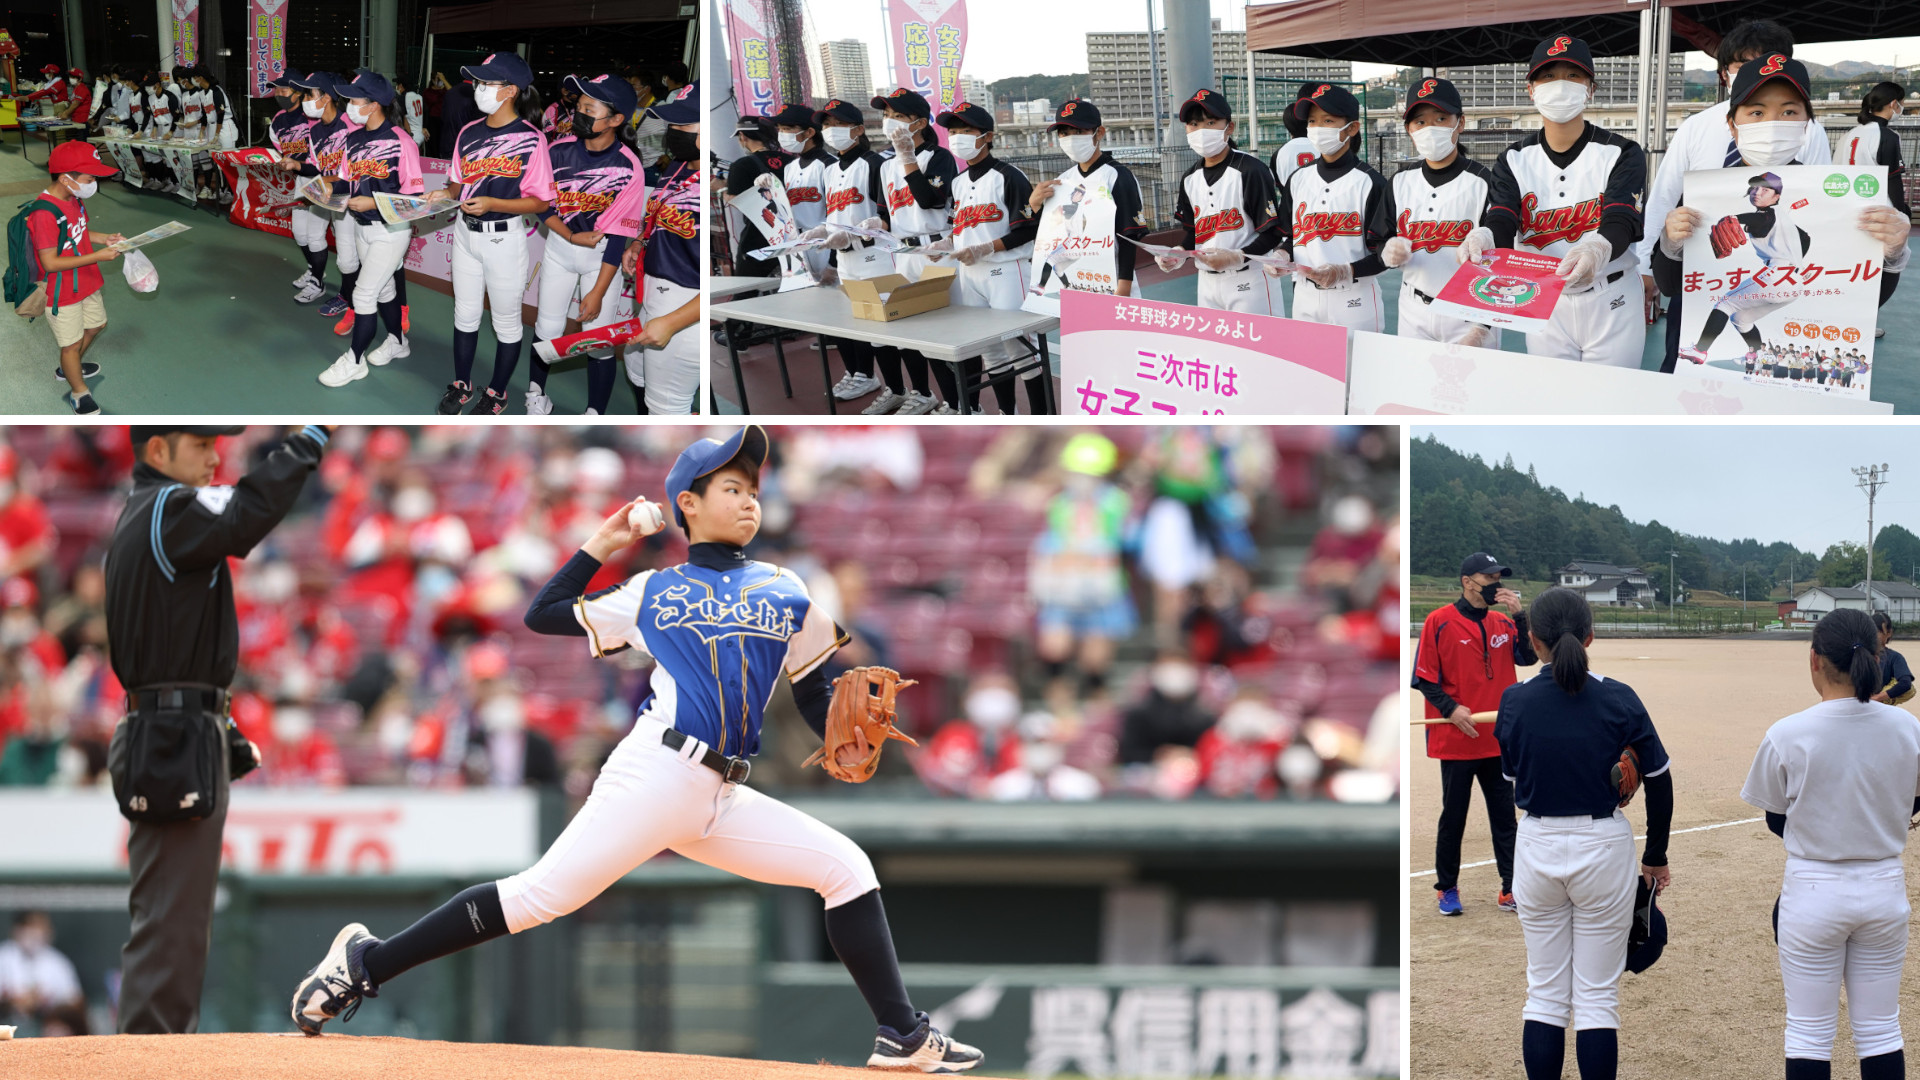 広島を女子野球大国に 女子選手の未来を指導と環境で照らす Sah スポーツアクティベーションひろしま